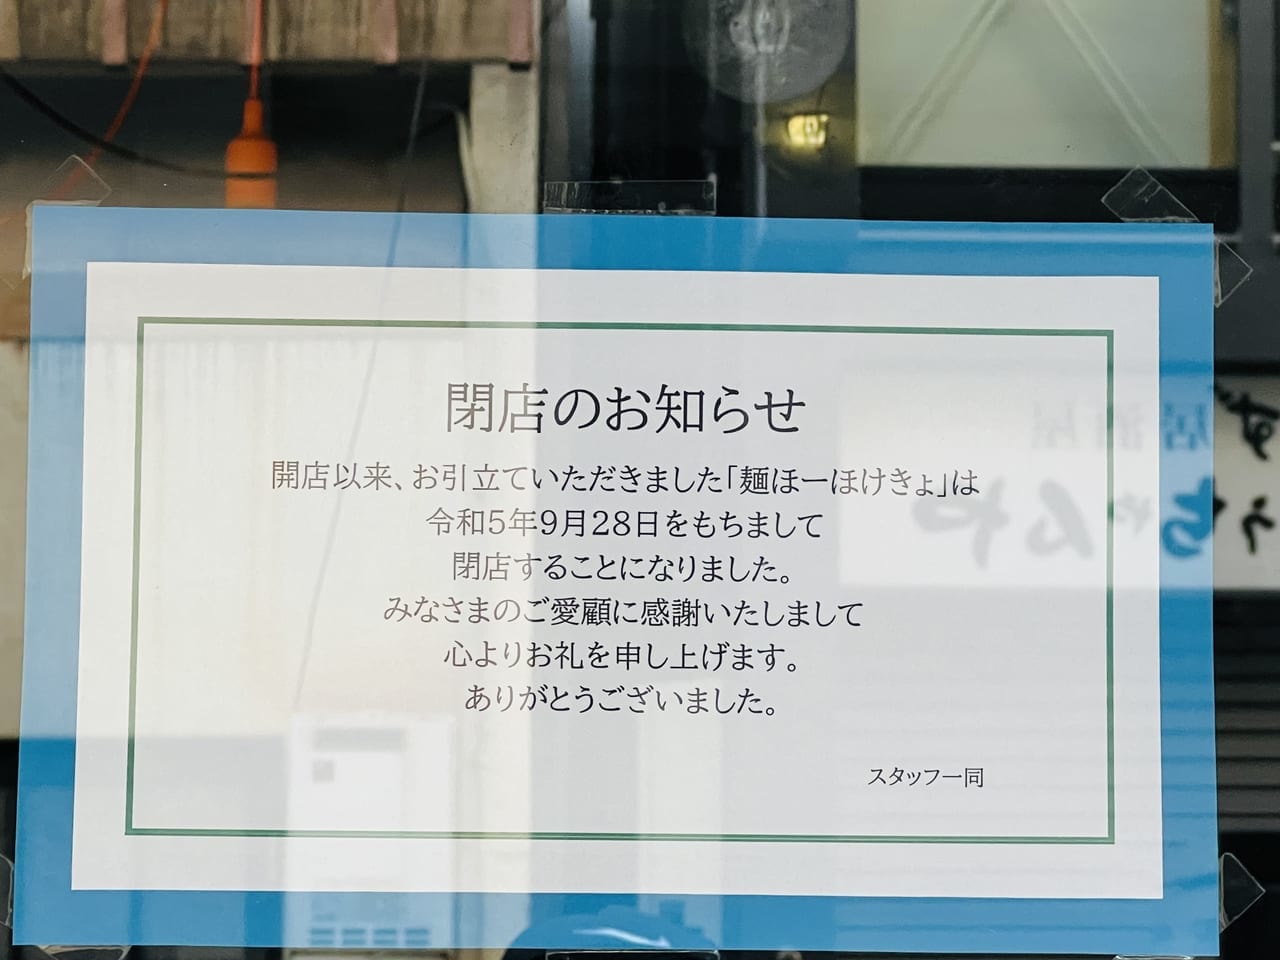 ラーメン屋「麺ほーほけきょ」の閉店のお知らせ